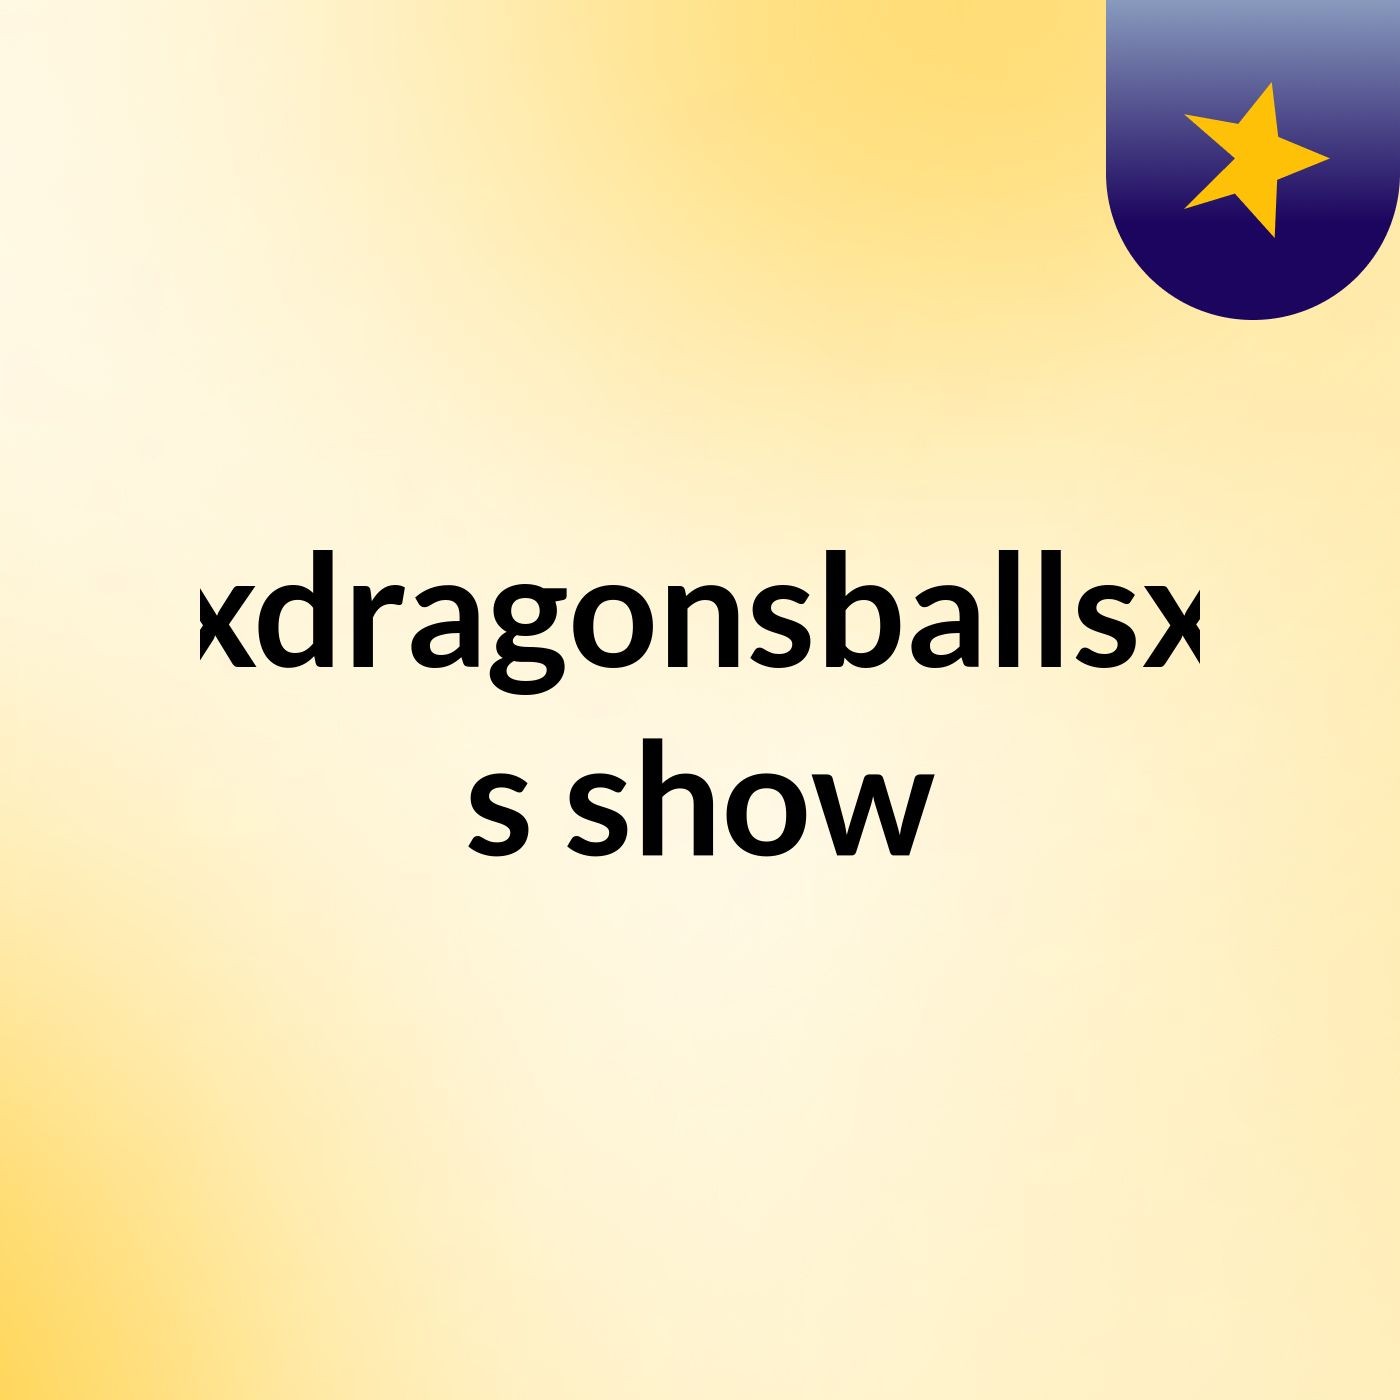 XxdragonsballsxX's show